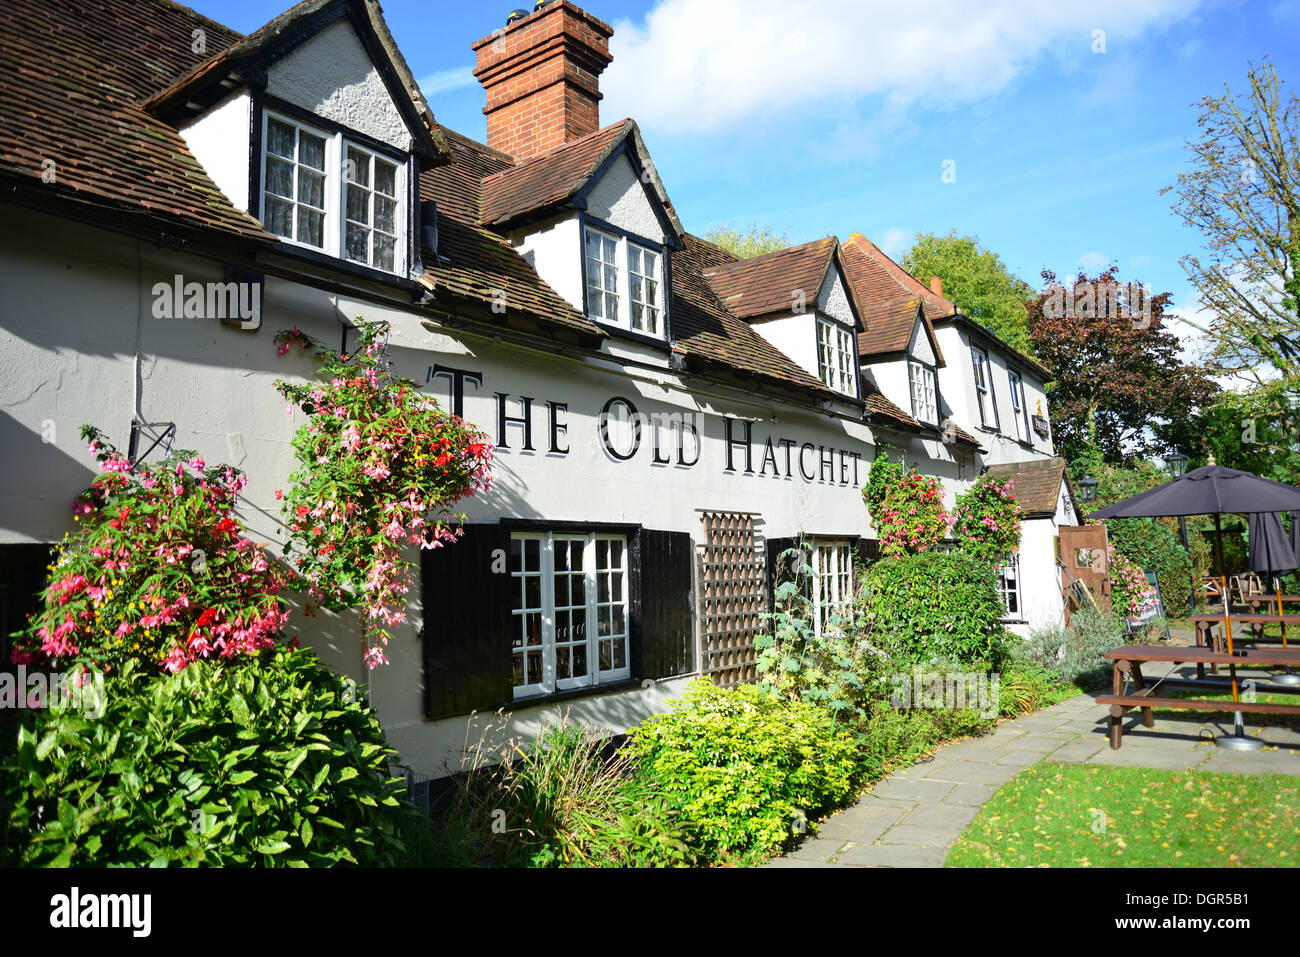 16e siècle 'le vieux' Hatchet Hatchet Lane, pub, Cranbourne, Berkshire, Angleterre, Royaume-Uni Banque D'Images